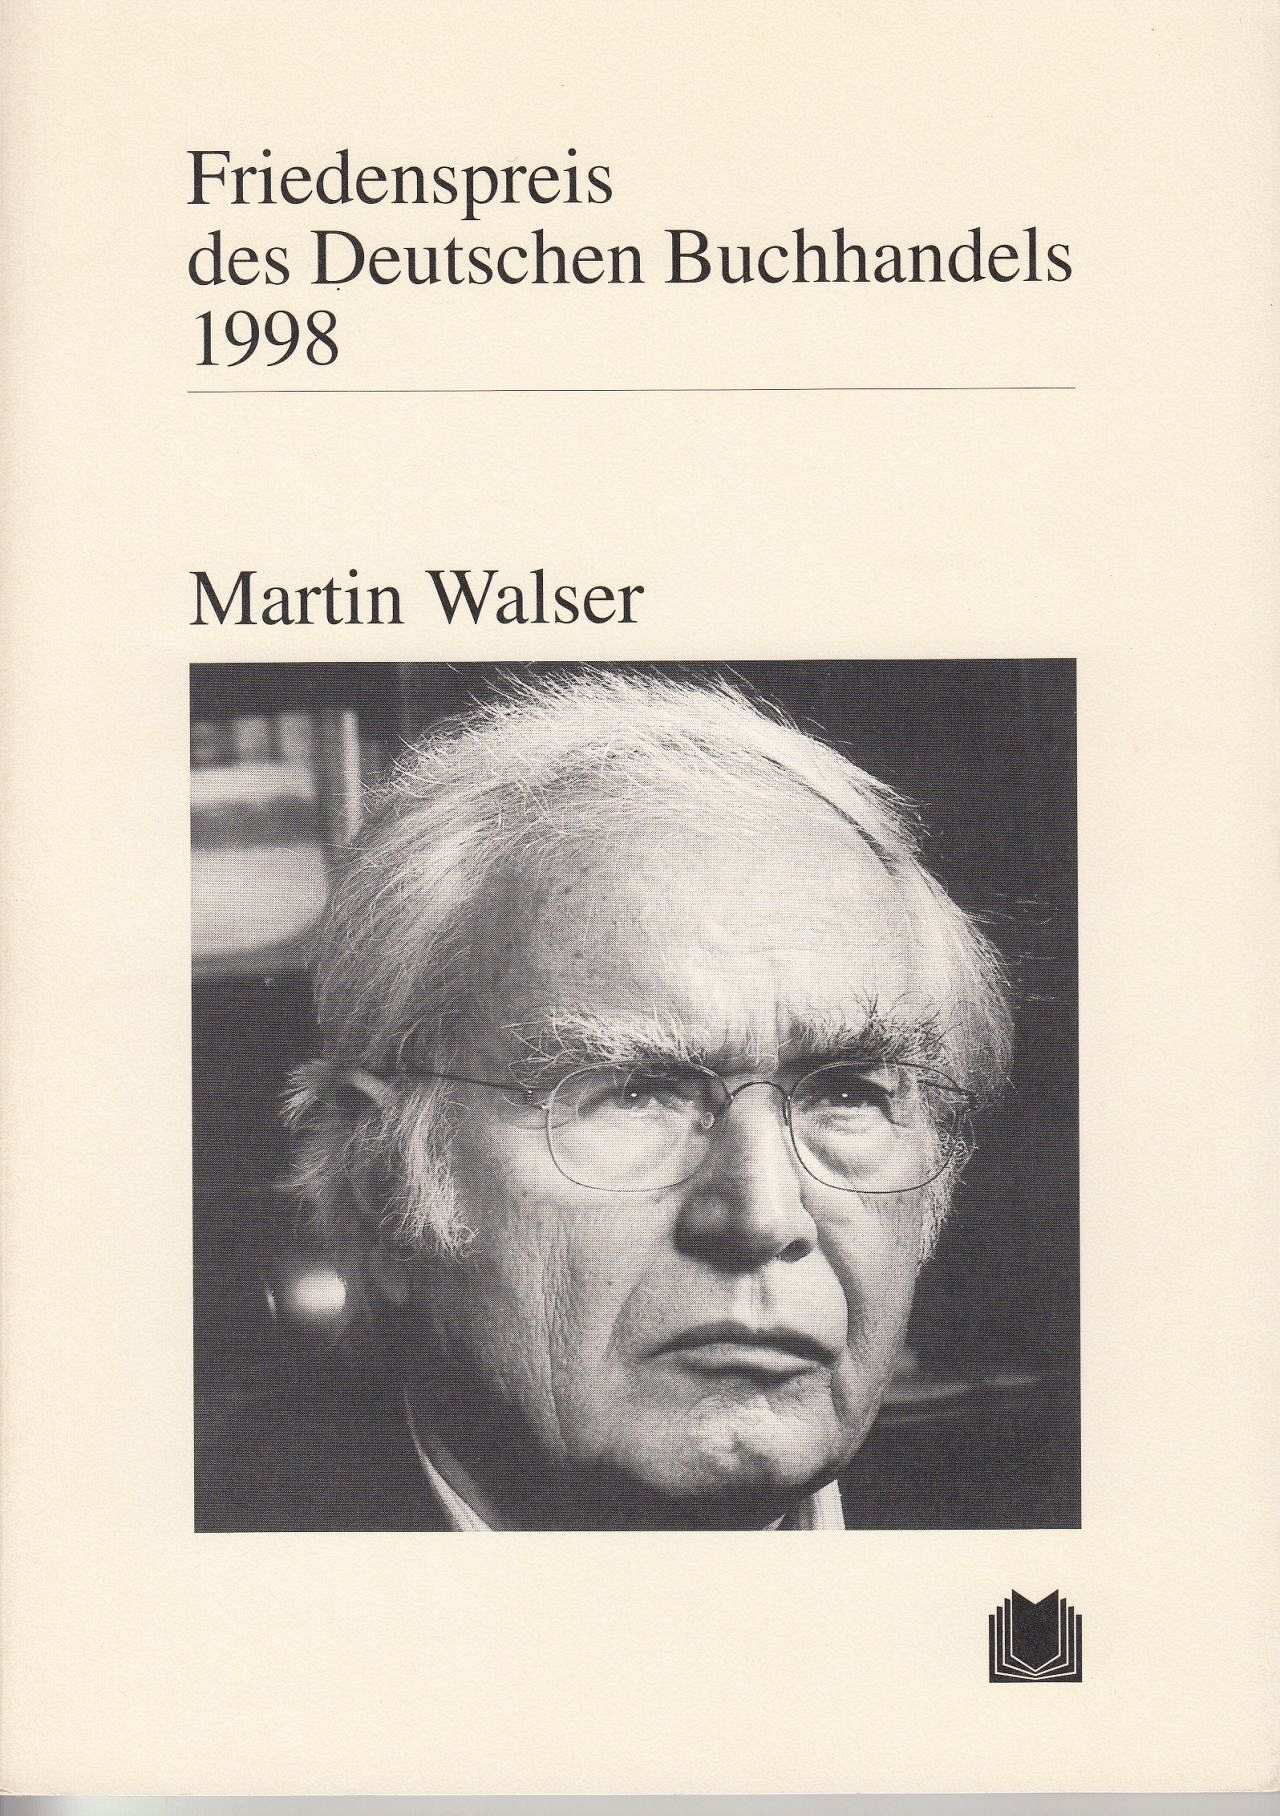 Buch mit dem Porträtfoto des Schriftstellers Martin Walser und dem Titel 